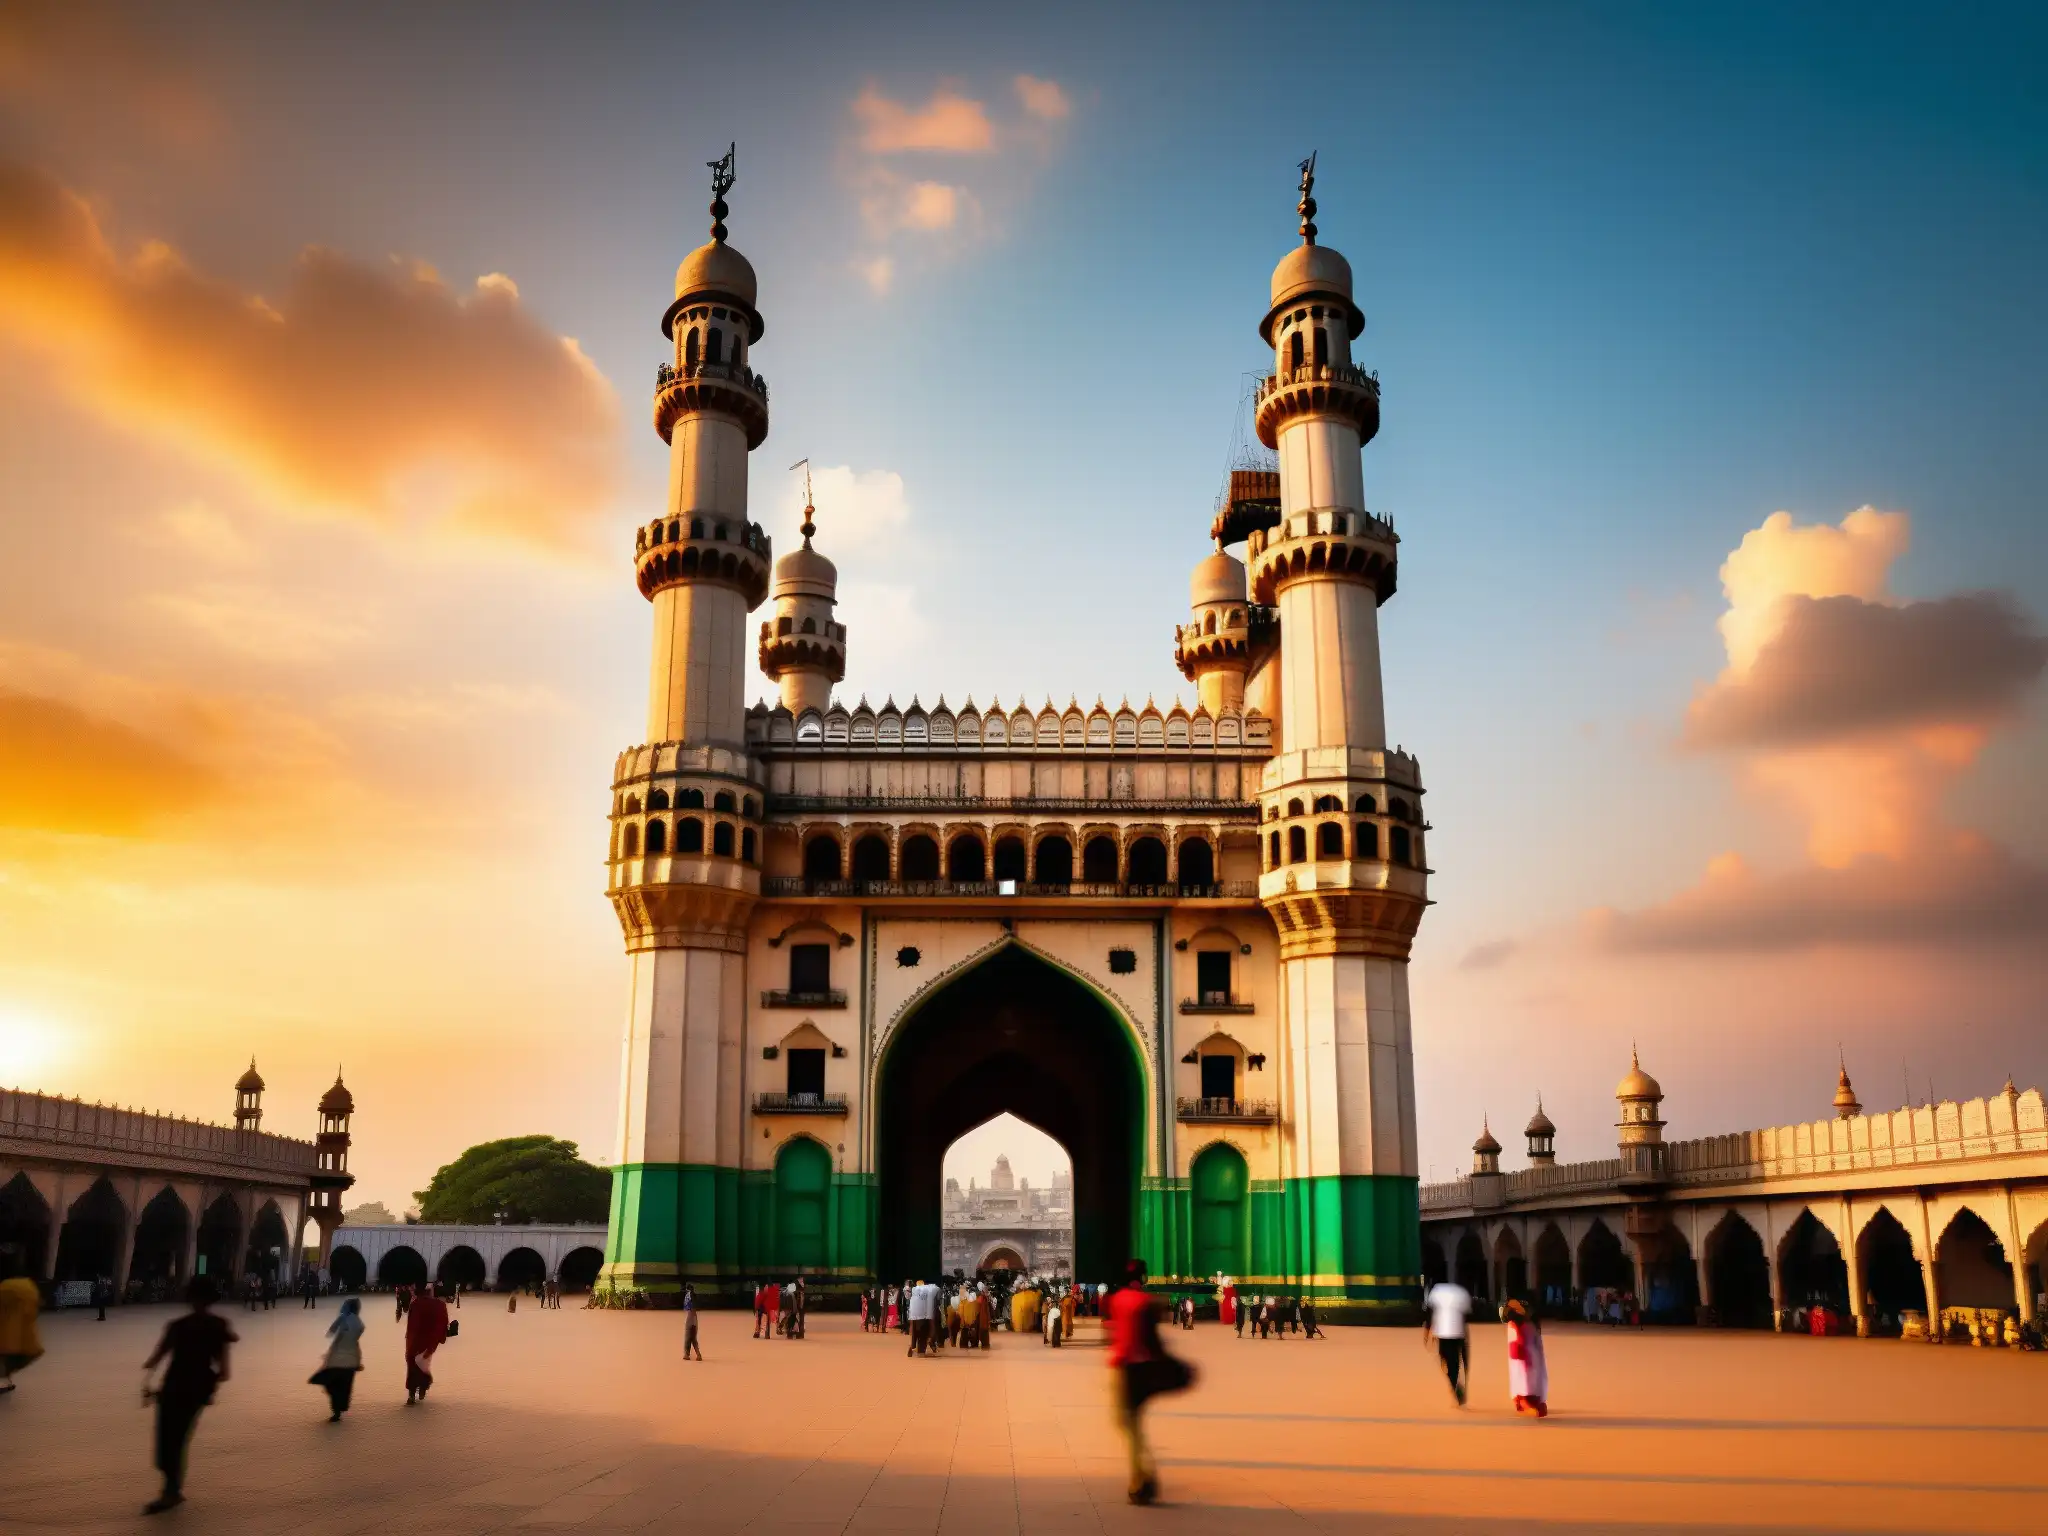 Una enigmática escena al atardecer en Hyderabad, India, con La Dama de la Torre de Charminar en primer plano, iluminada por la cálida luz dorada